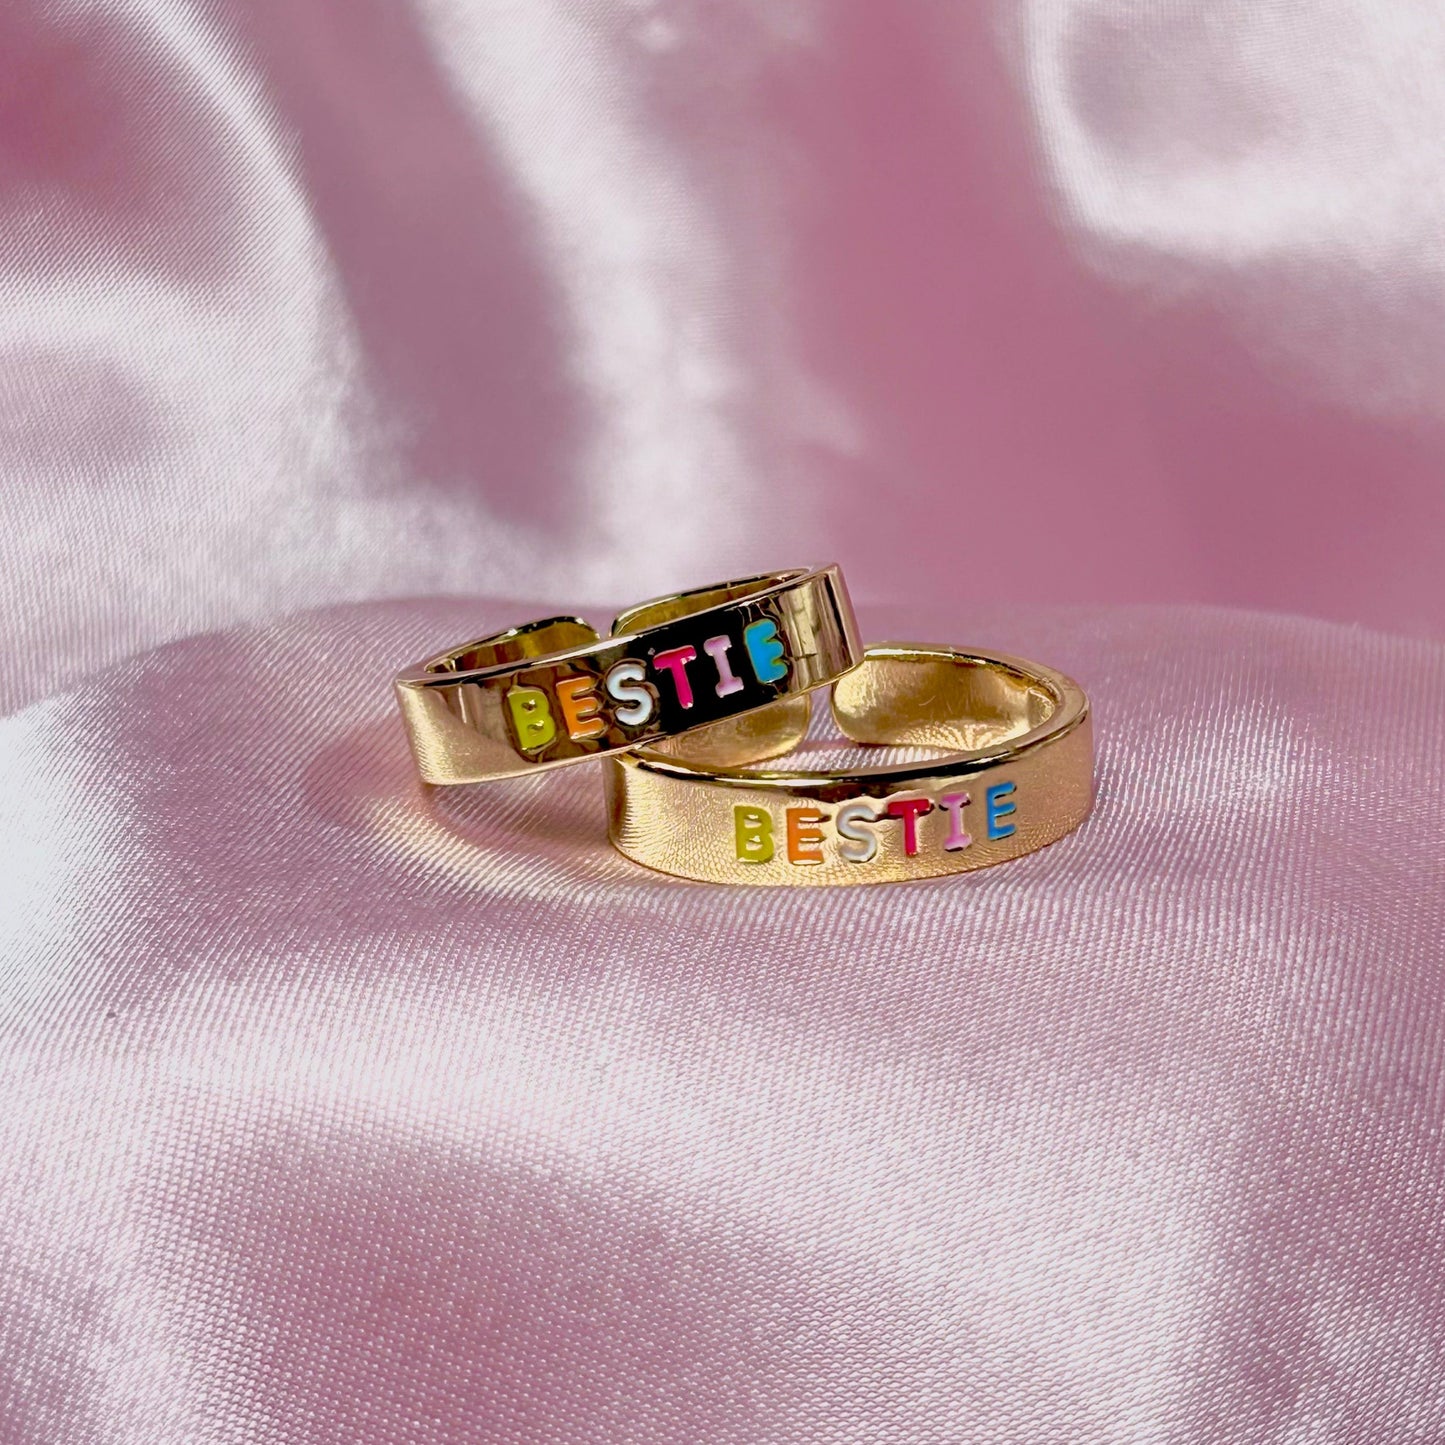 "Bestie" Friendship Ring